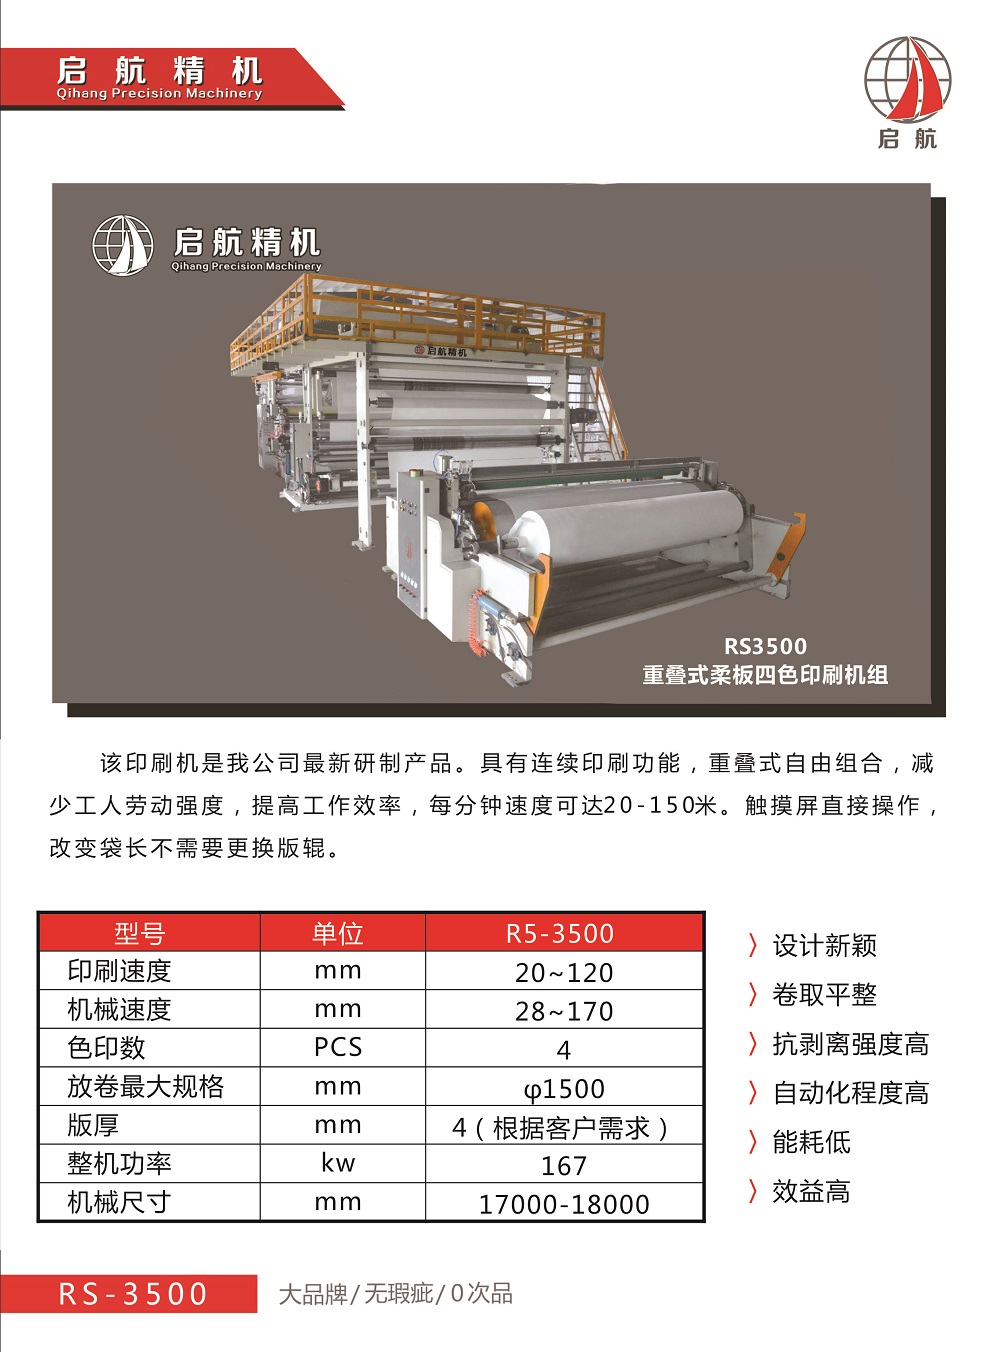 厂家直销重叠式柔板四色印刷机R3500